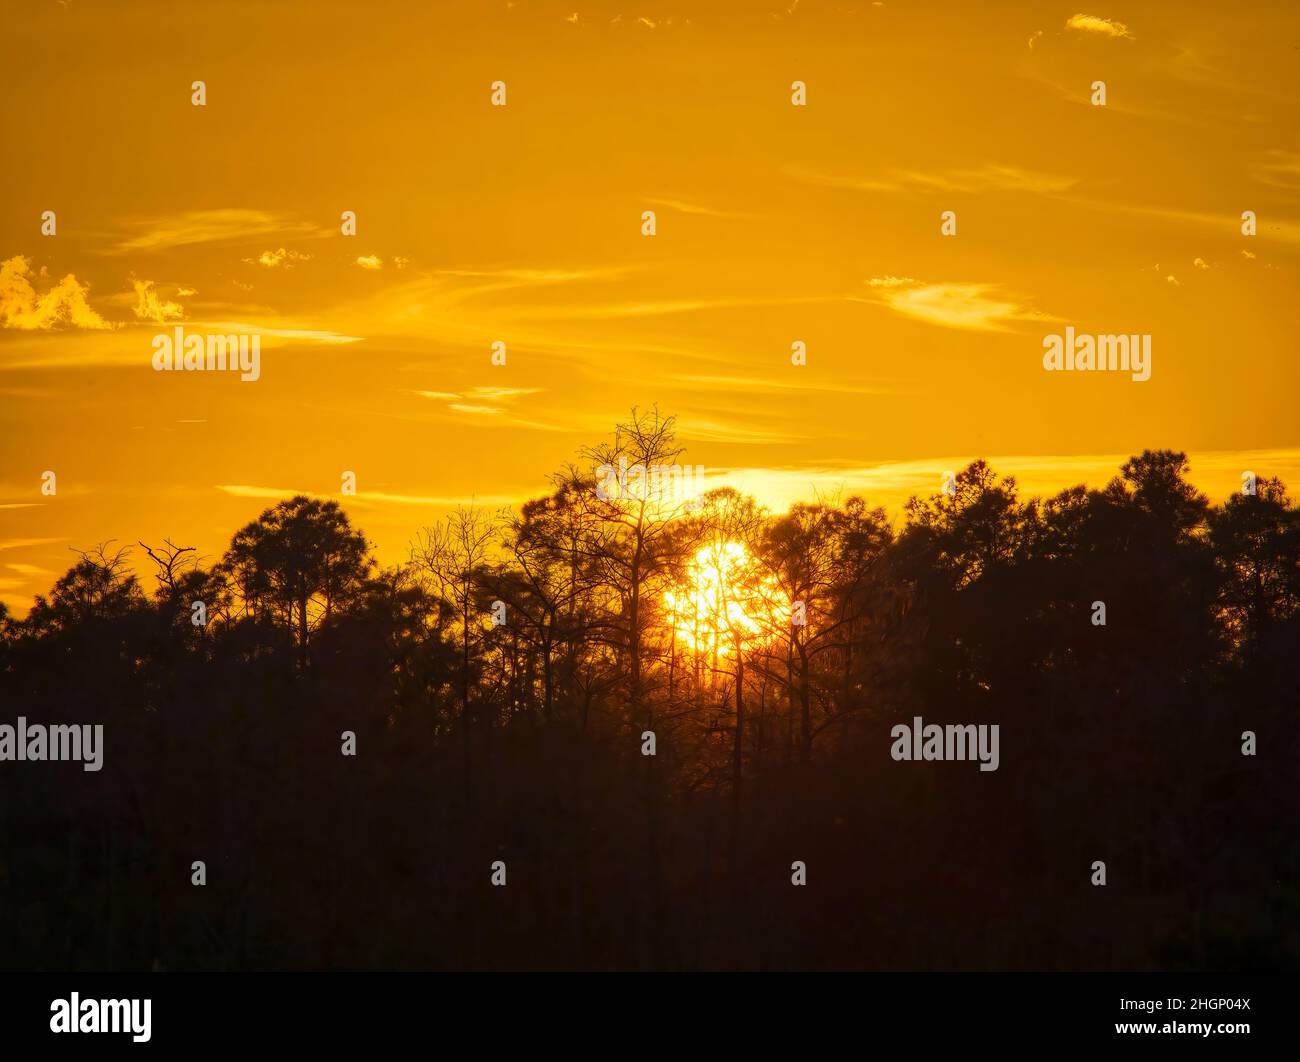 Coucher de soleil dans la région plus courte de Kirby Roadside Park de la réserve nationale de Big Cypress en Floride, États-Unis Banque D'Images